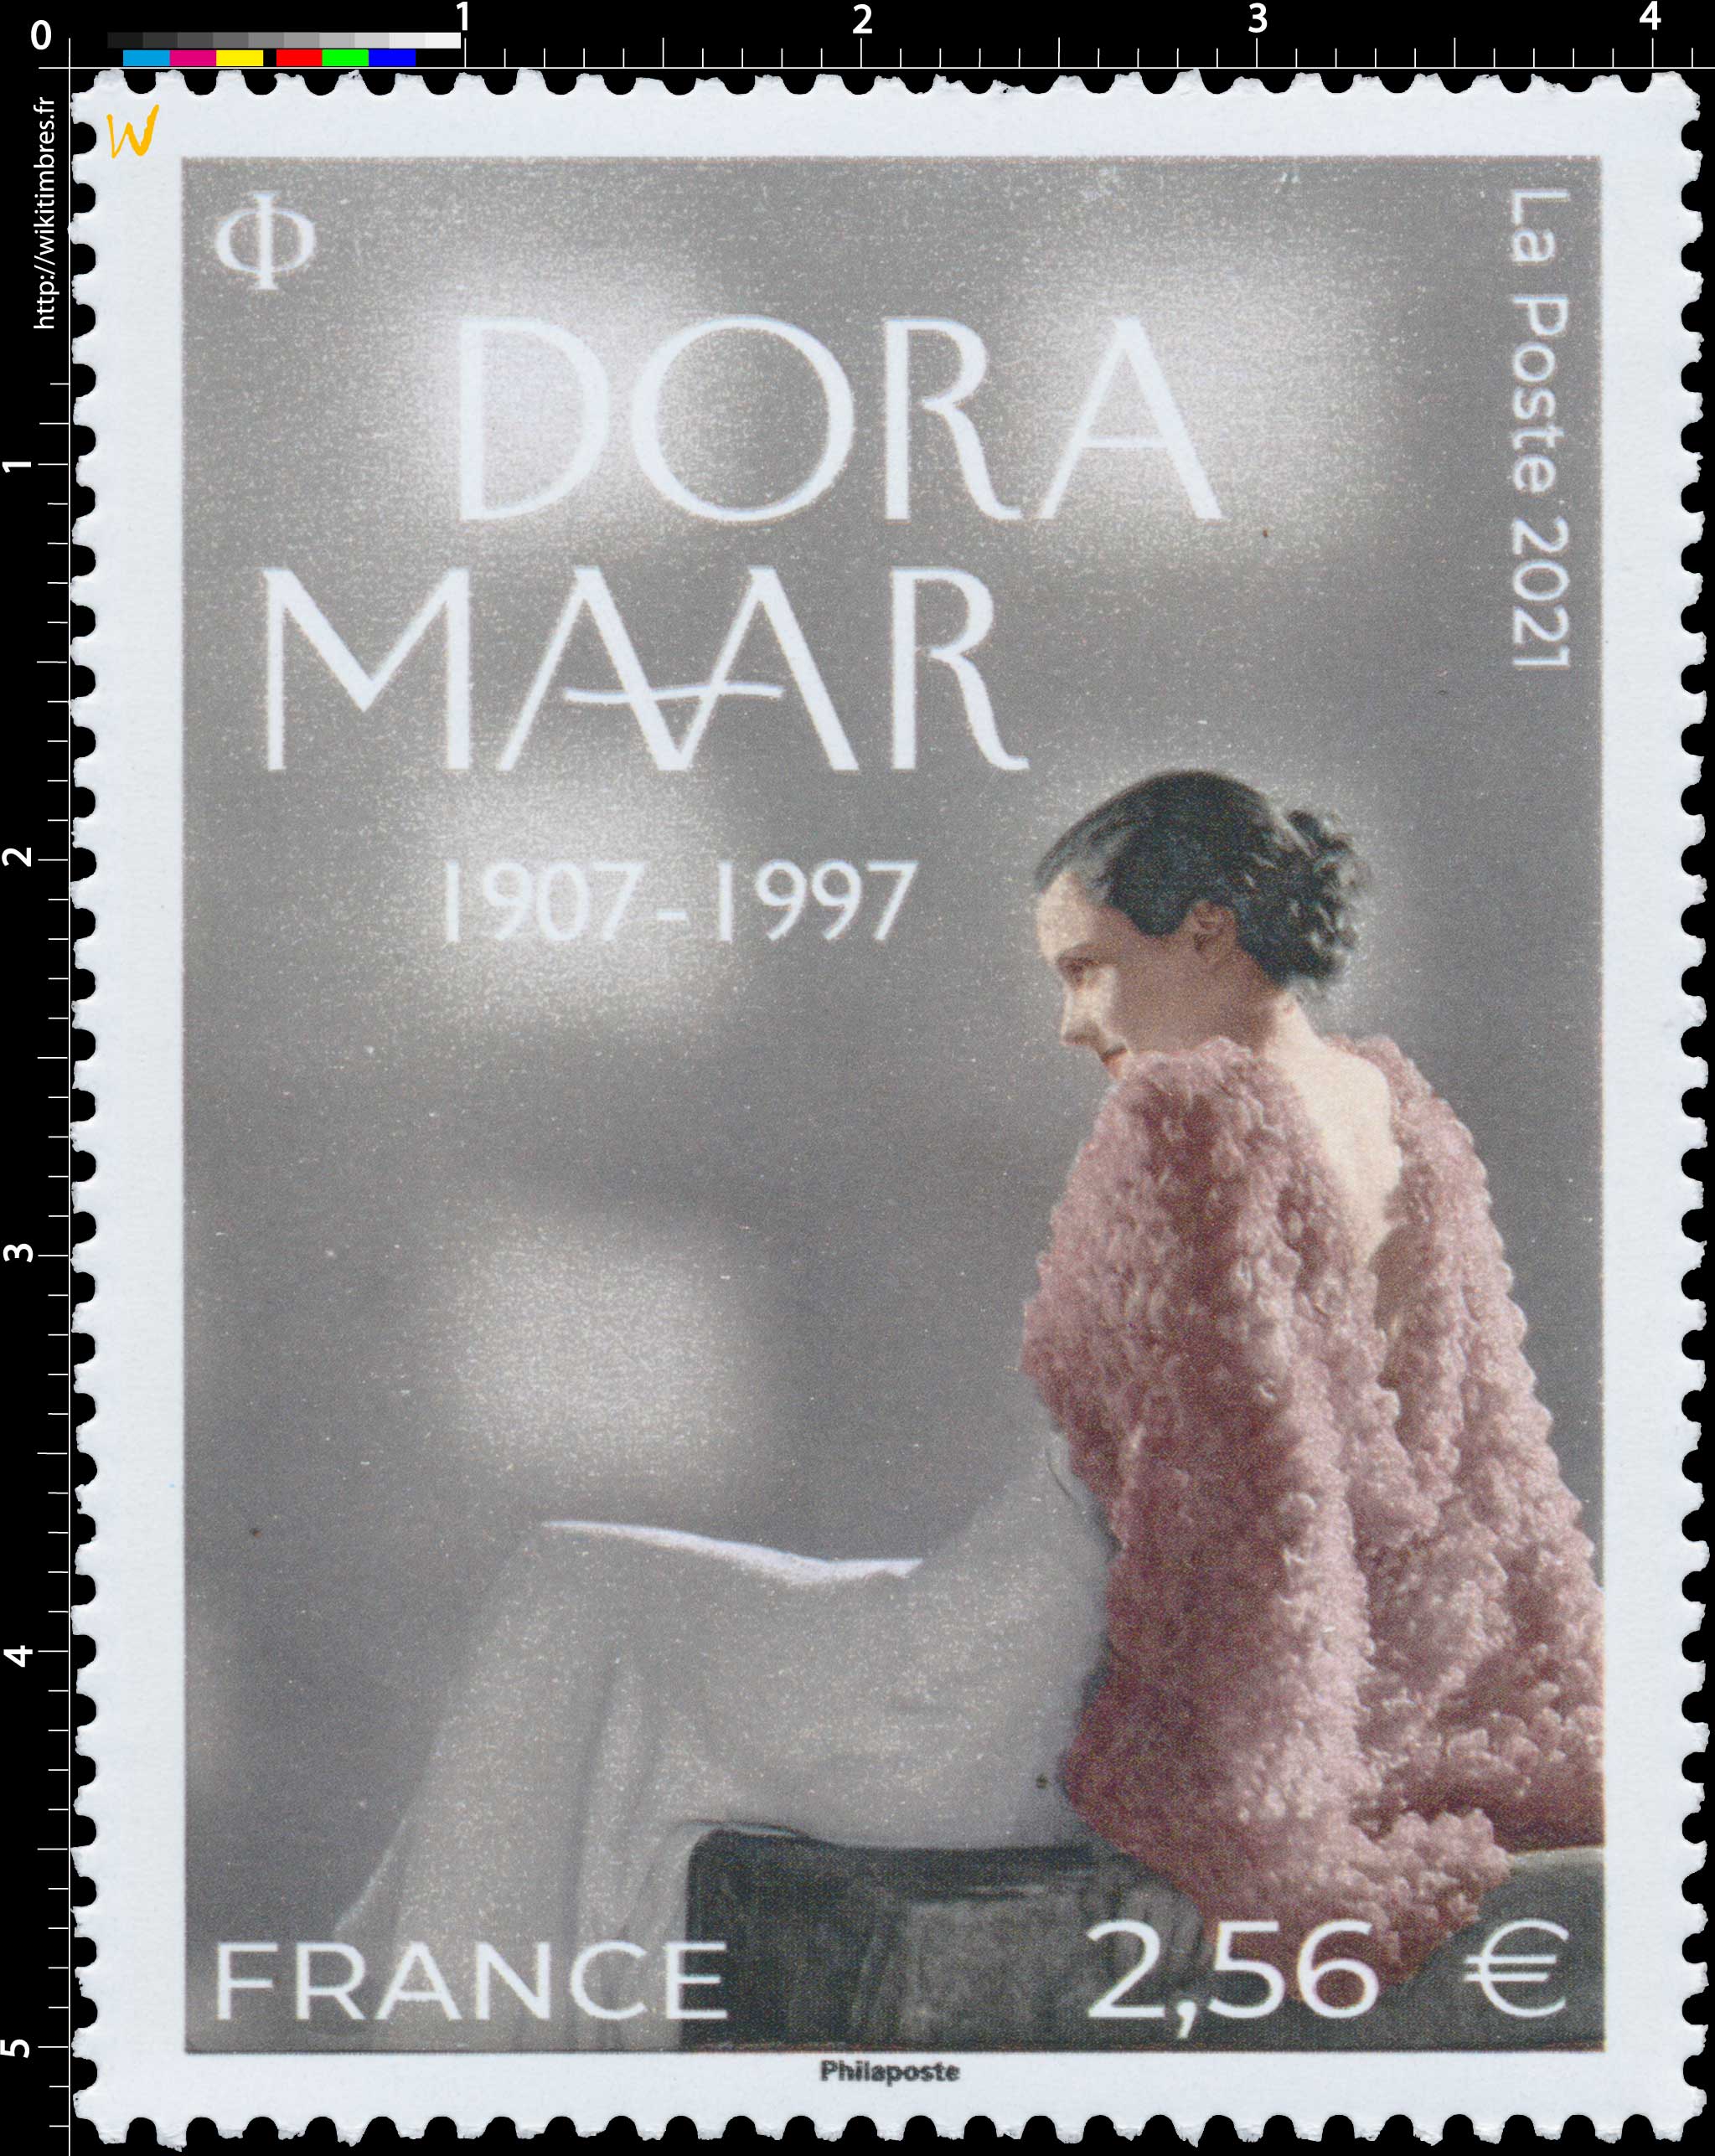 2021 DORA MAAR 1907 - 1997